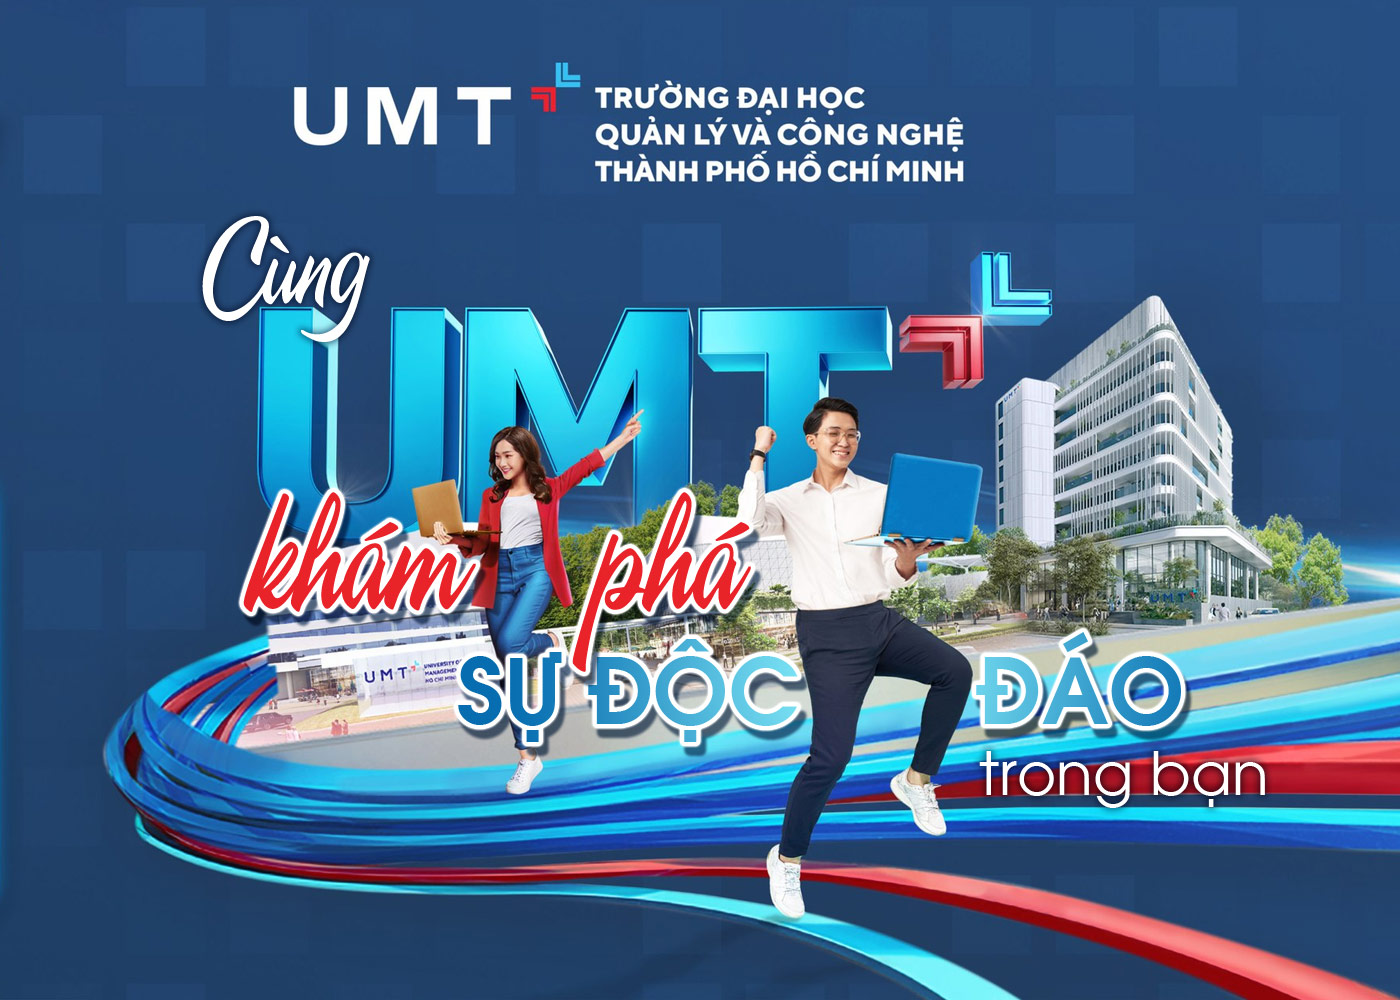 Cùng trường đại học UMT khám phá sự độc đáo trong bạn - Ảnh 1